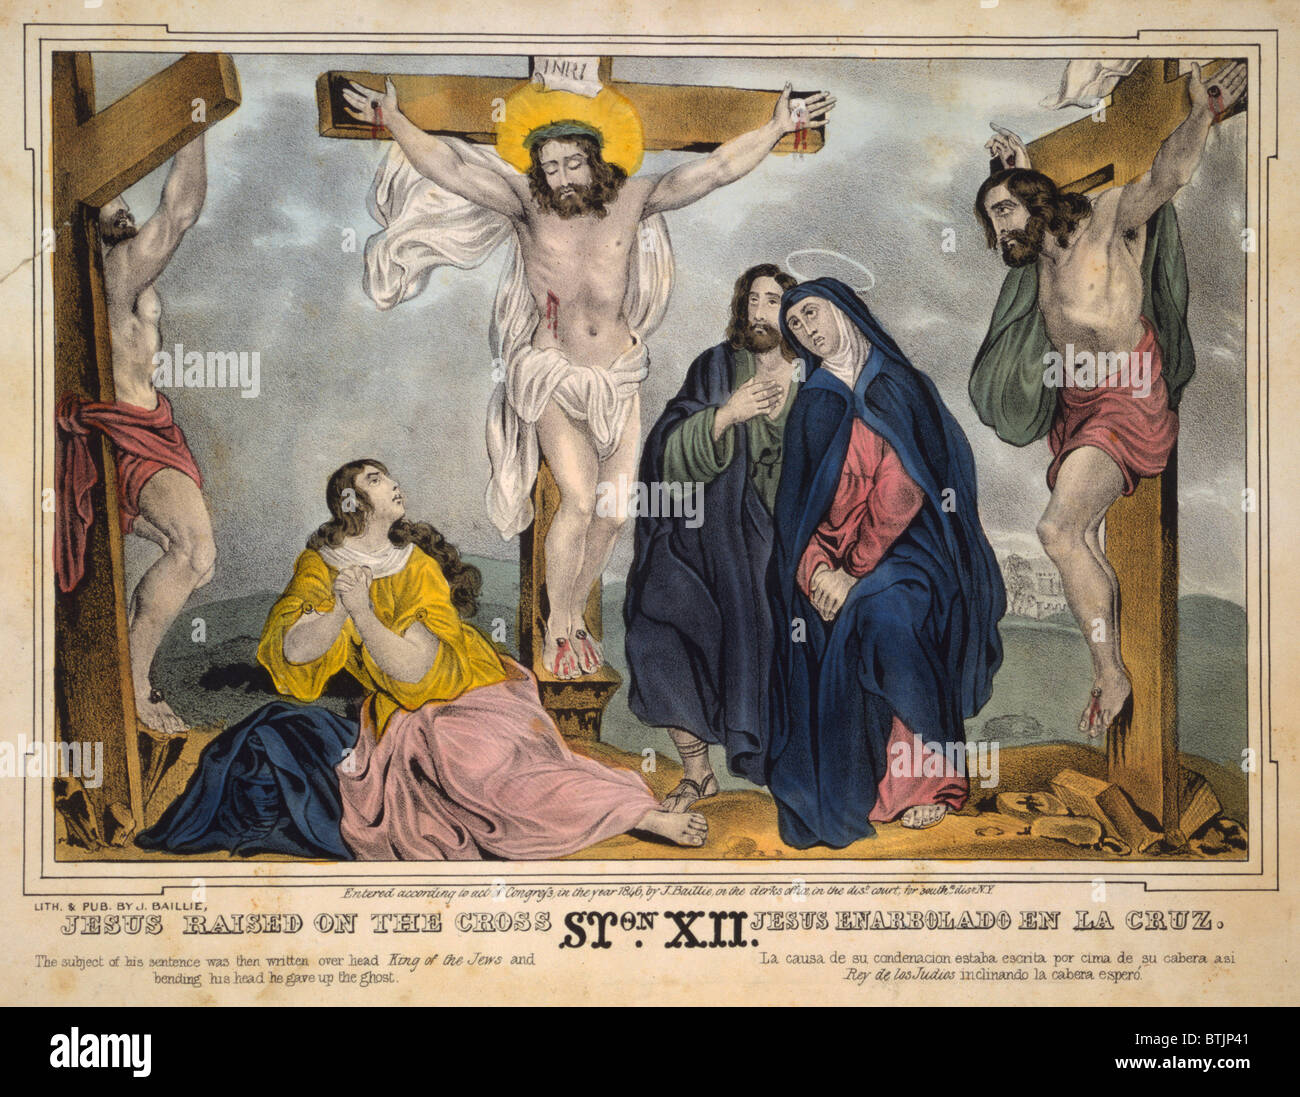 Gesù Cristo Gesù innalzato sulla croce, Maria (secondo da destra), piange  la morte di seguito, James S. Baillie, litografia, circa 1846 Foto stock -  Alamy